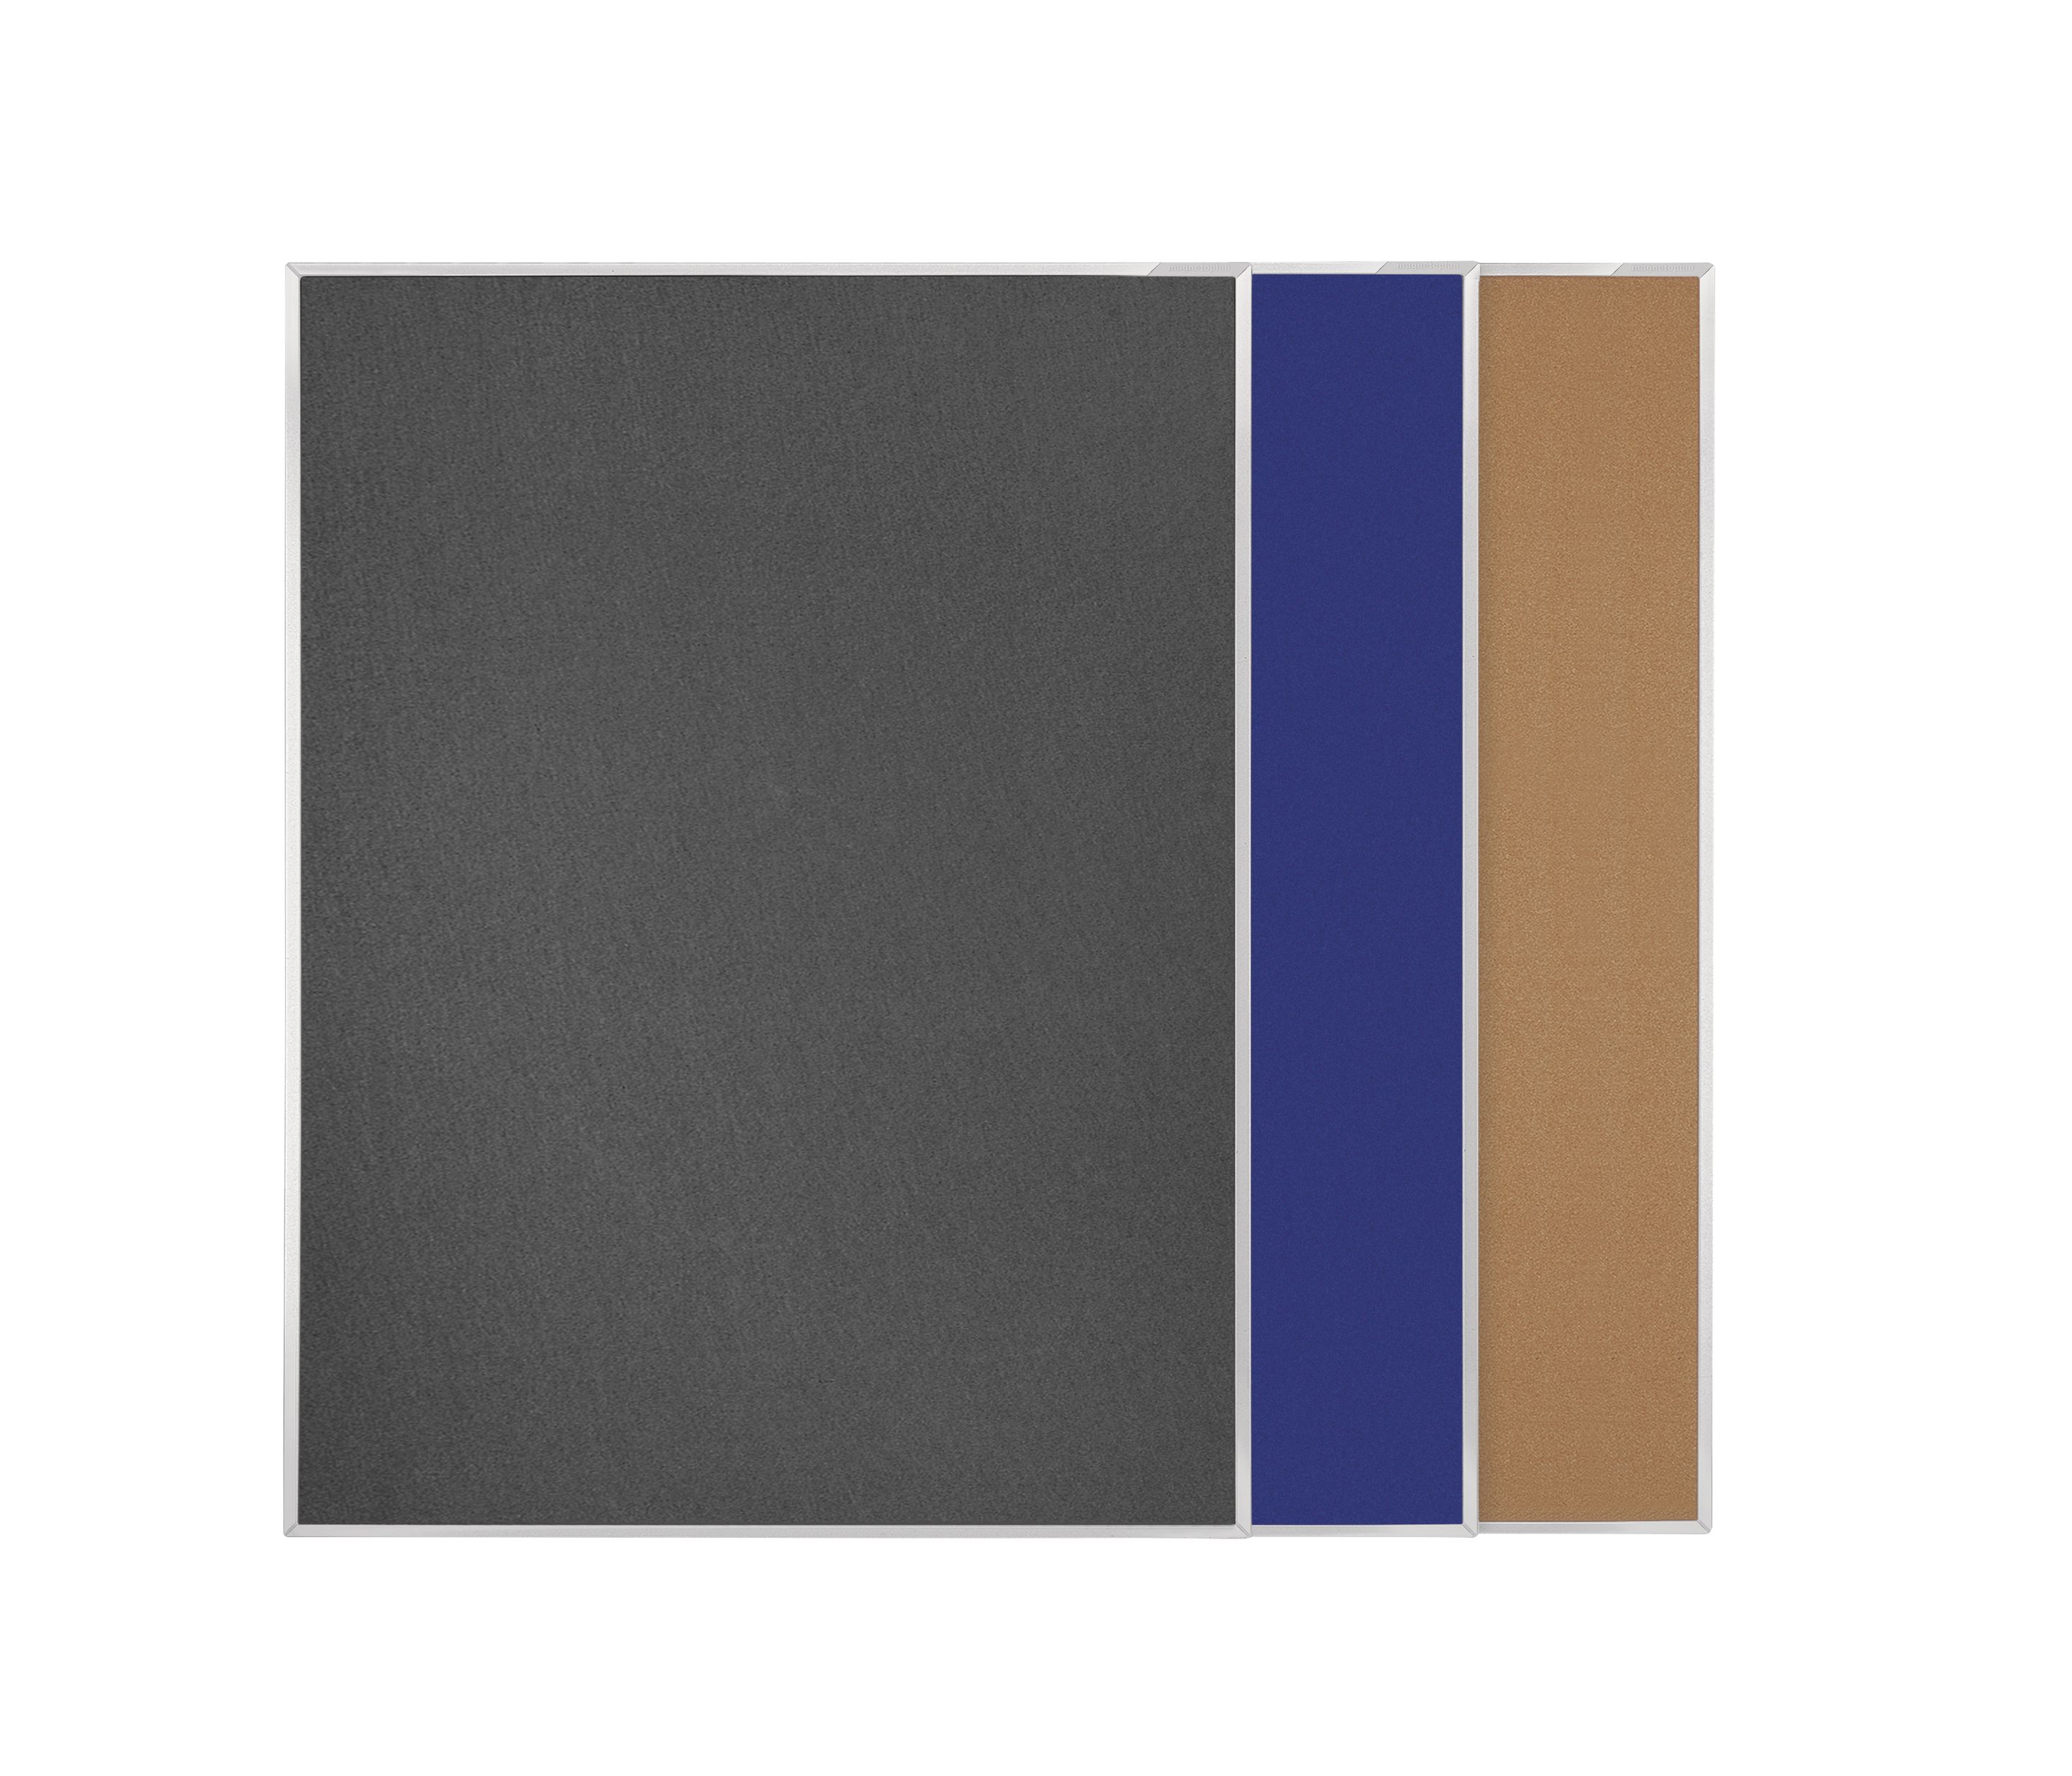 Pintafel einseitig (1200x900mm, Filz blau)